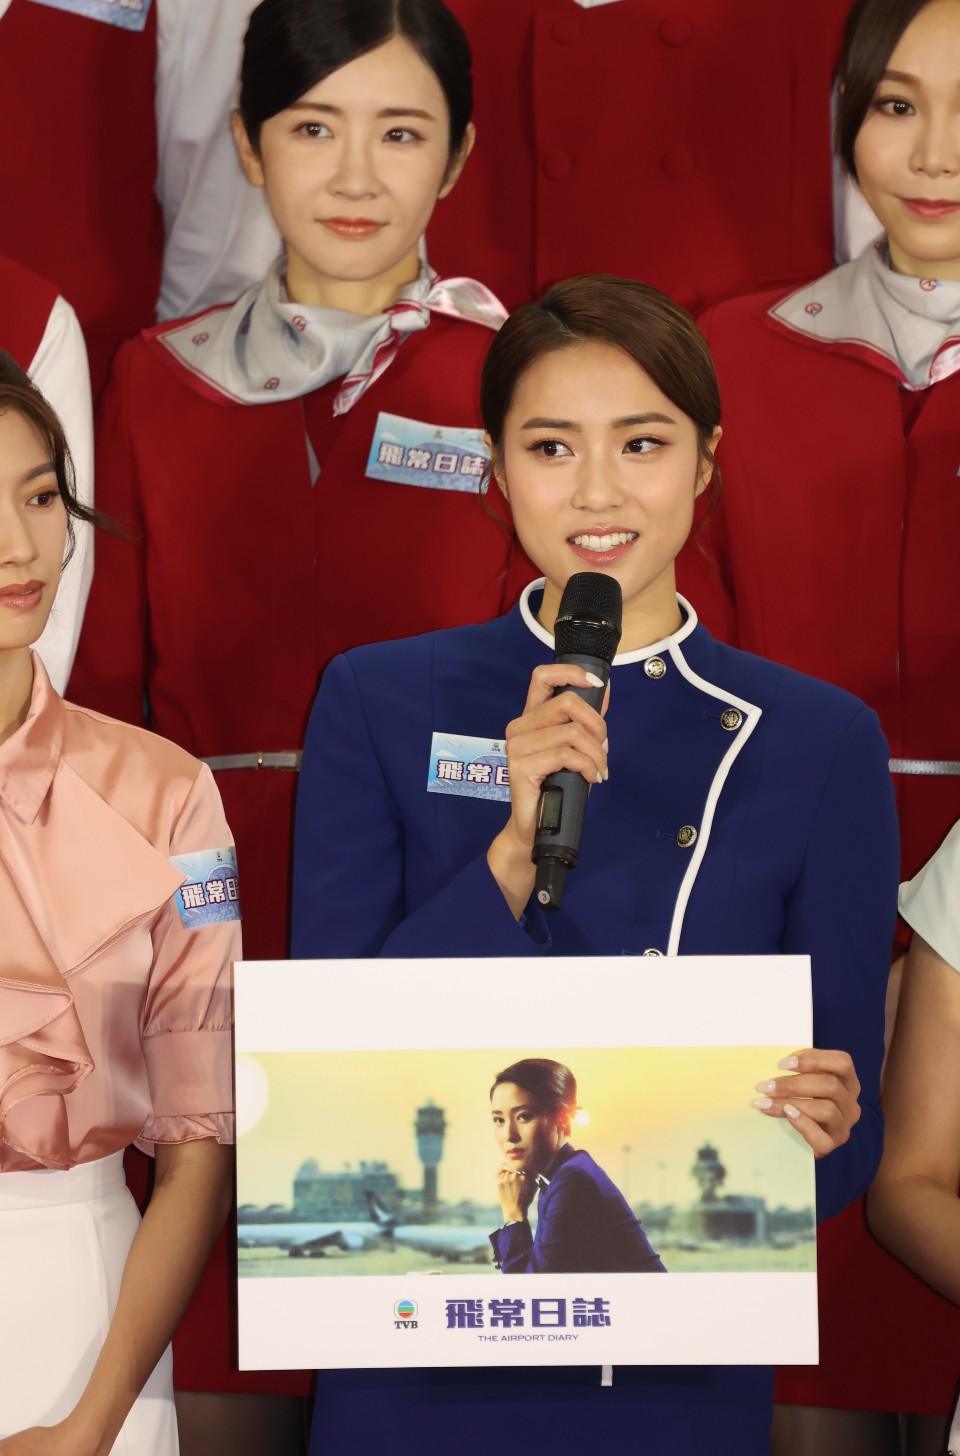 刘颖镟的空姐造型好吸睛。